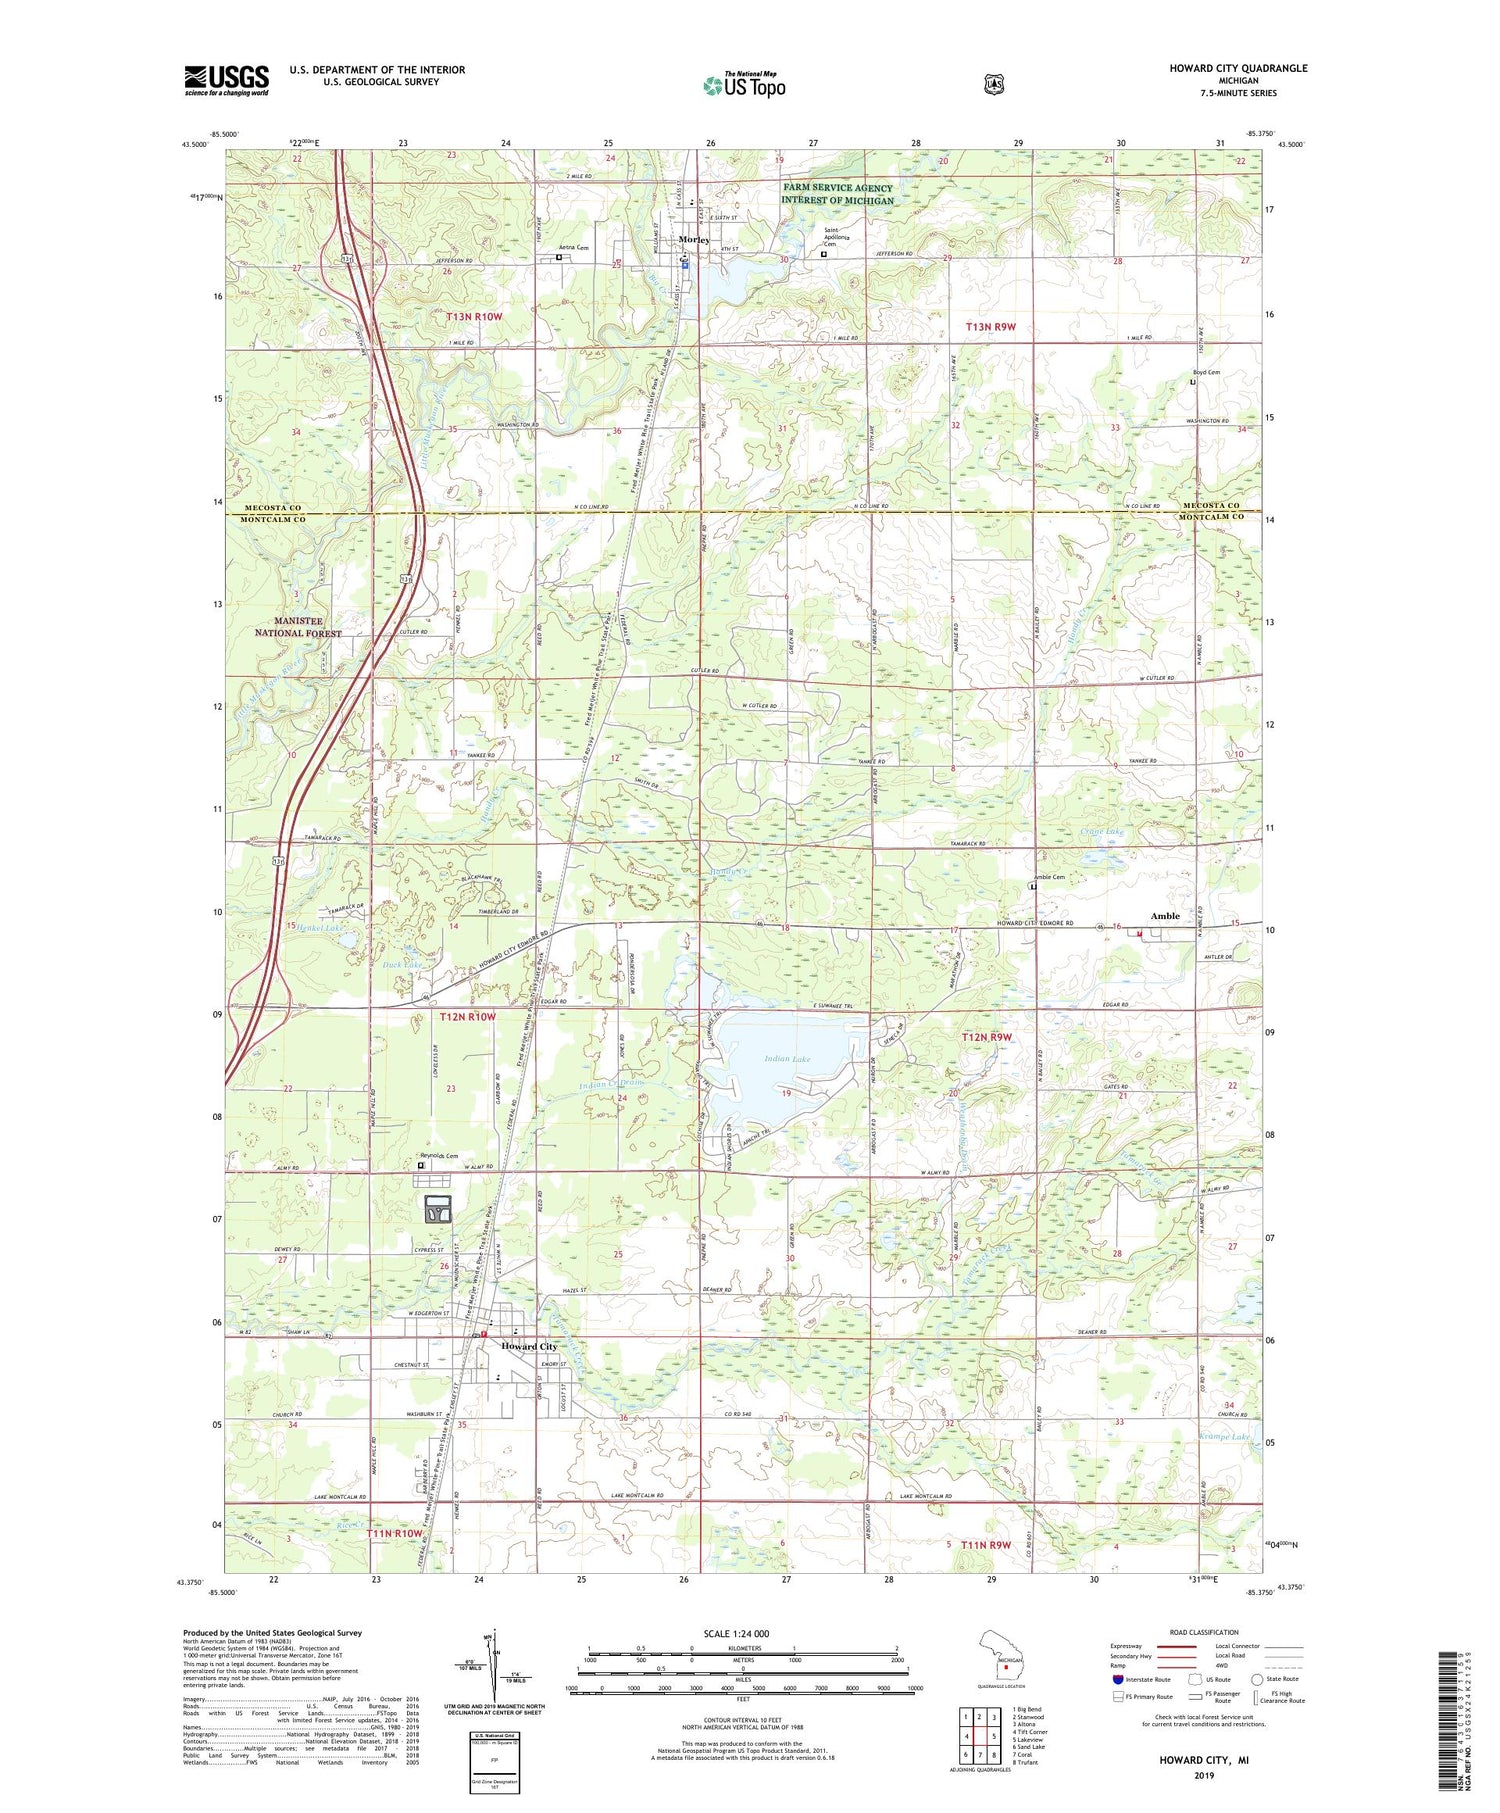 Howard City Michigan US Topo Map Image